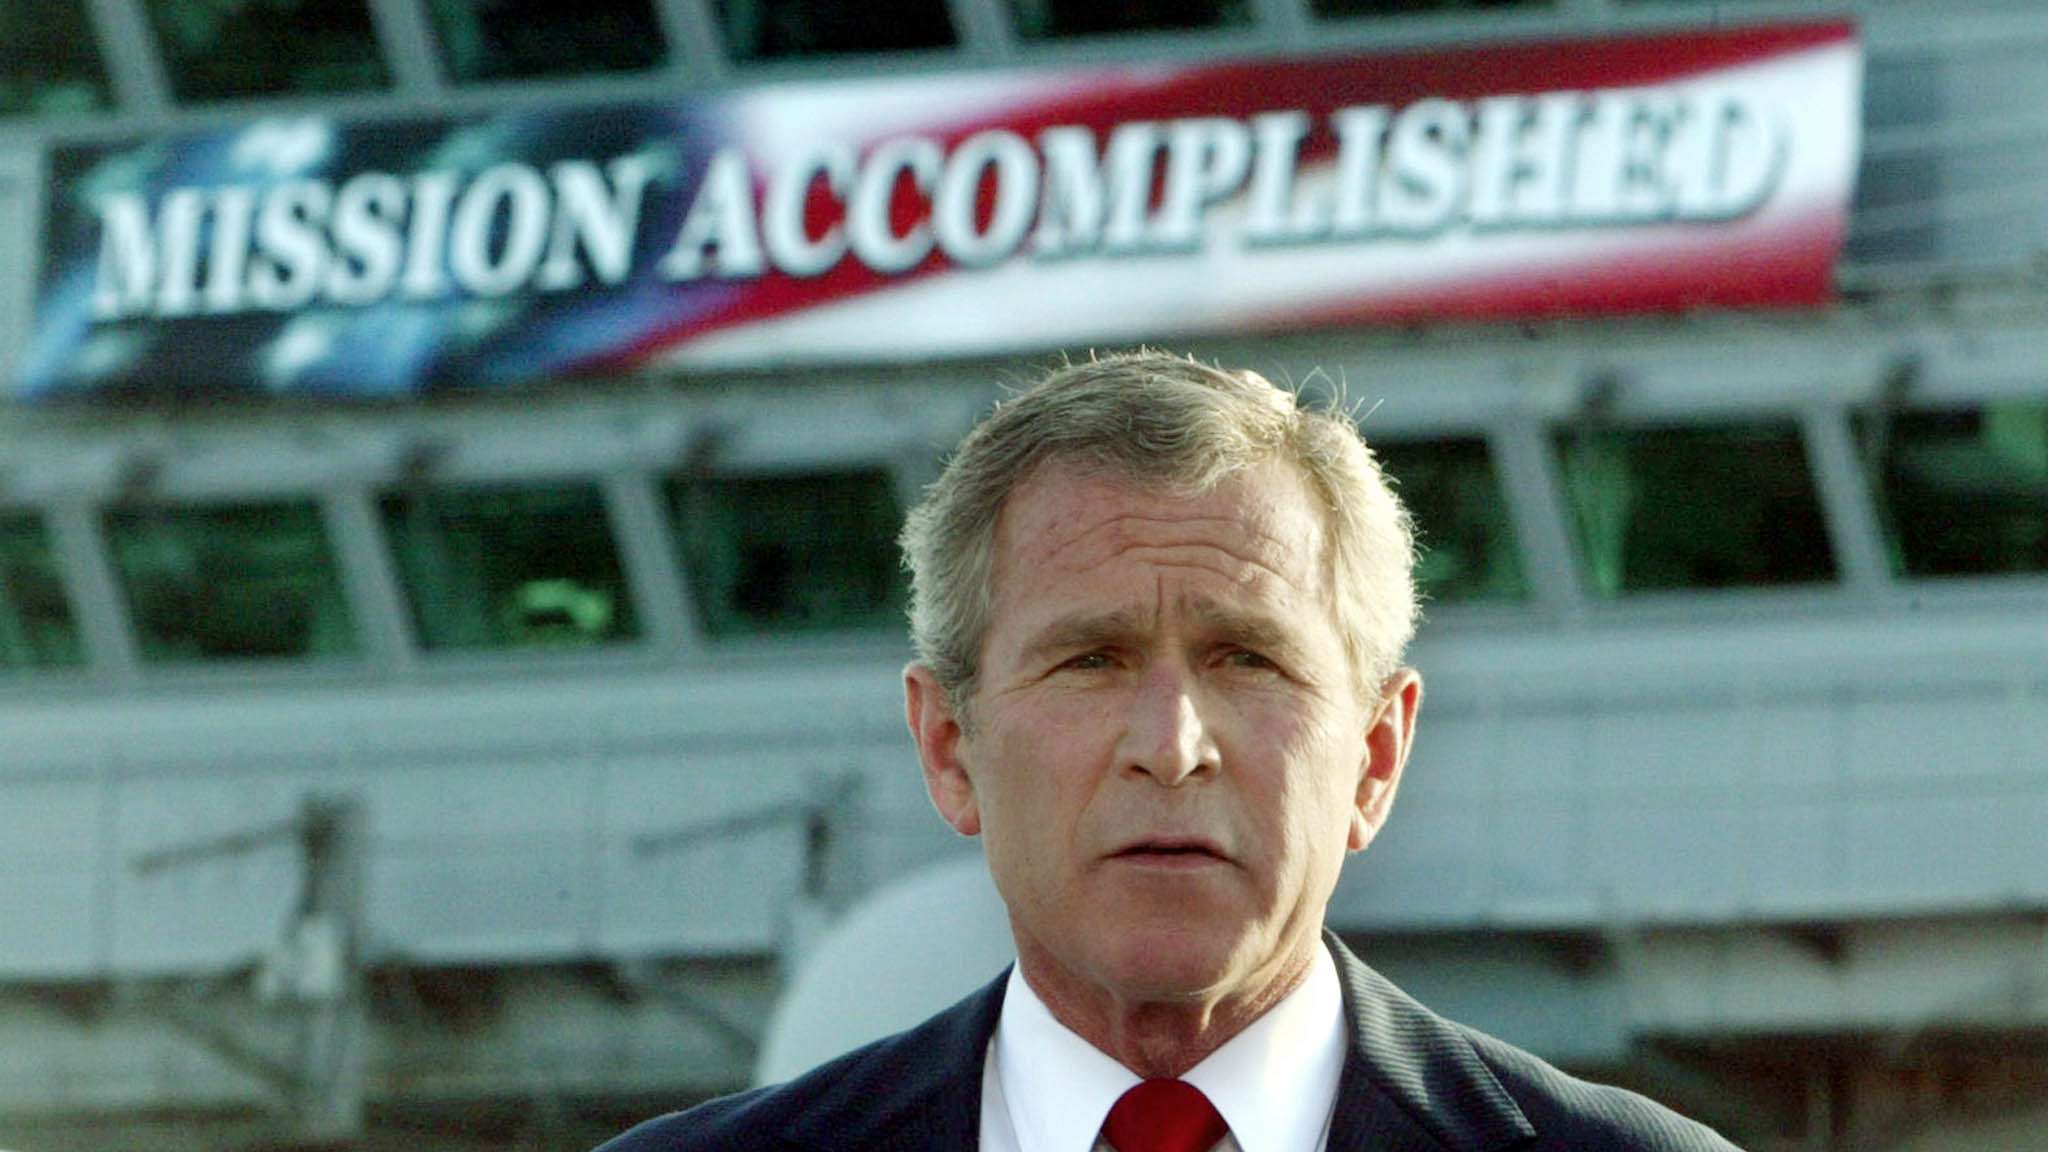 Bush addresses U.S. troops